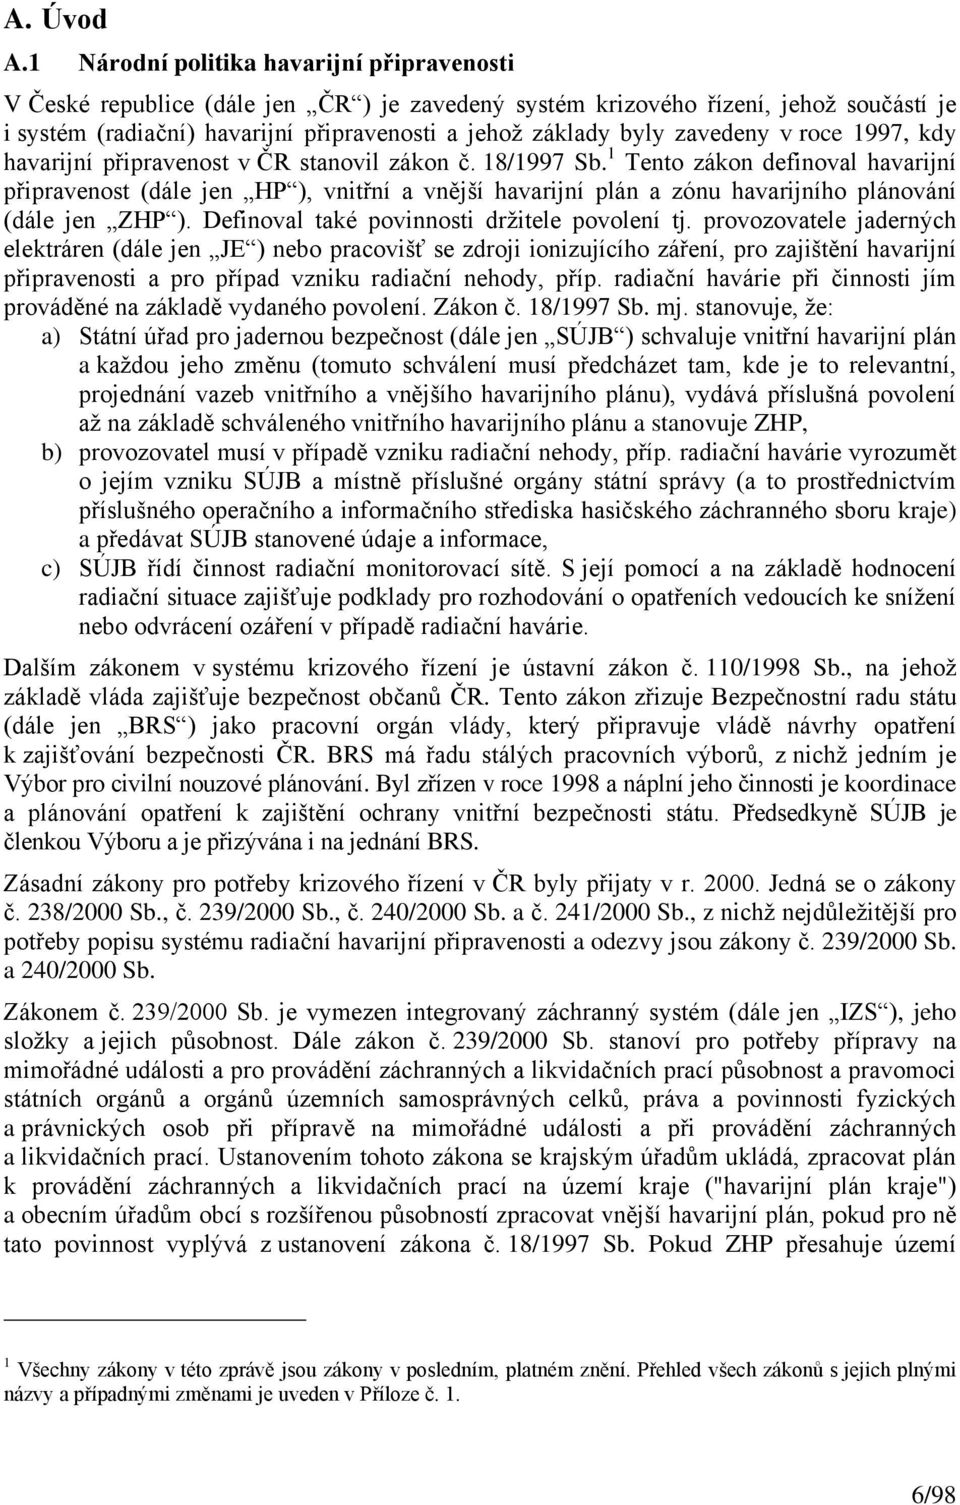 zavedeny v roce 1997, kdy havarijní připravenost v ČR stanovil zákon č. 18/1997 Sb.